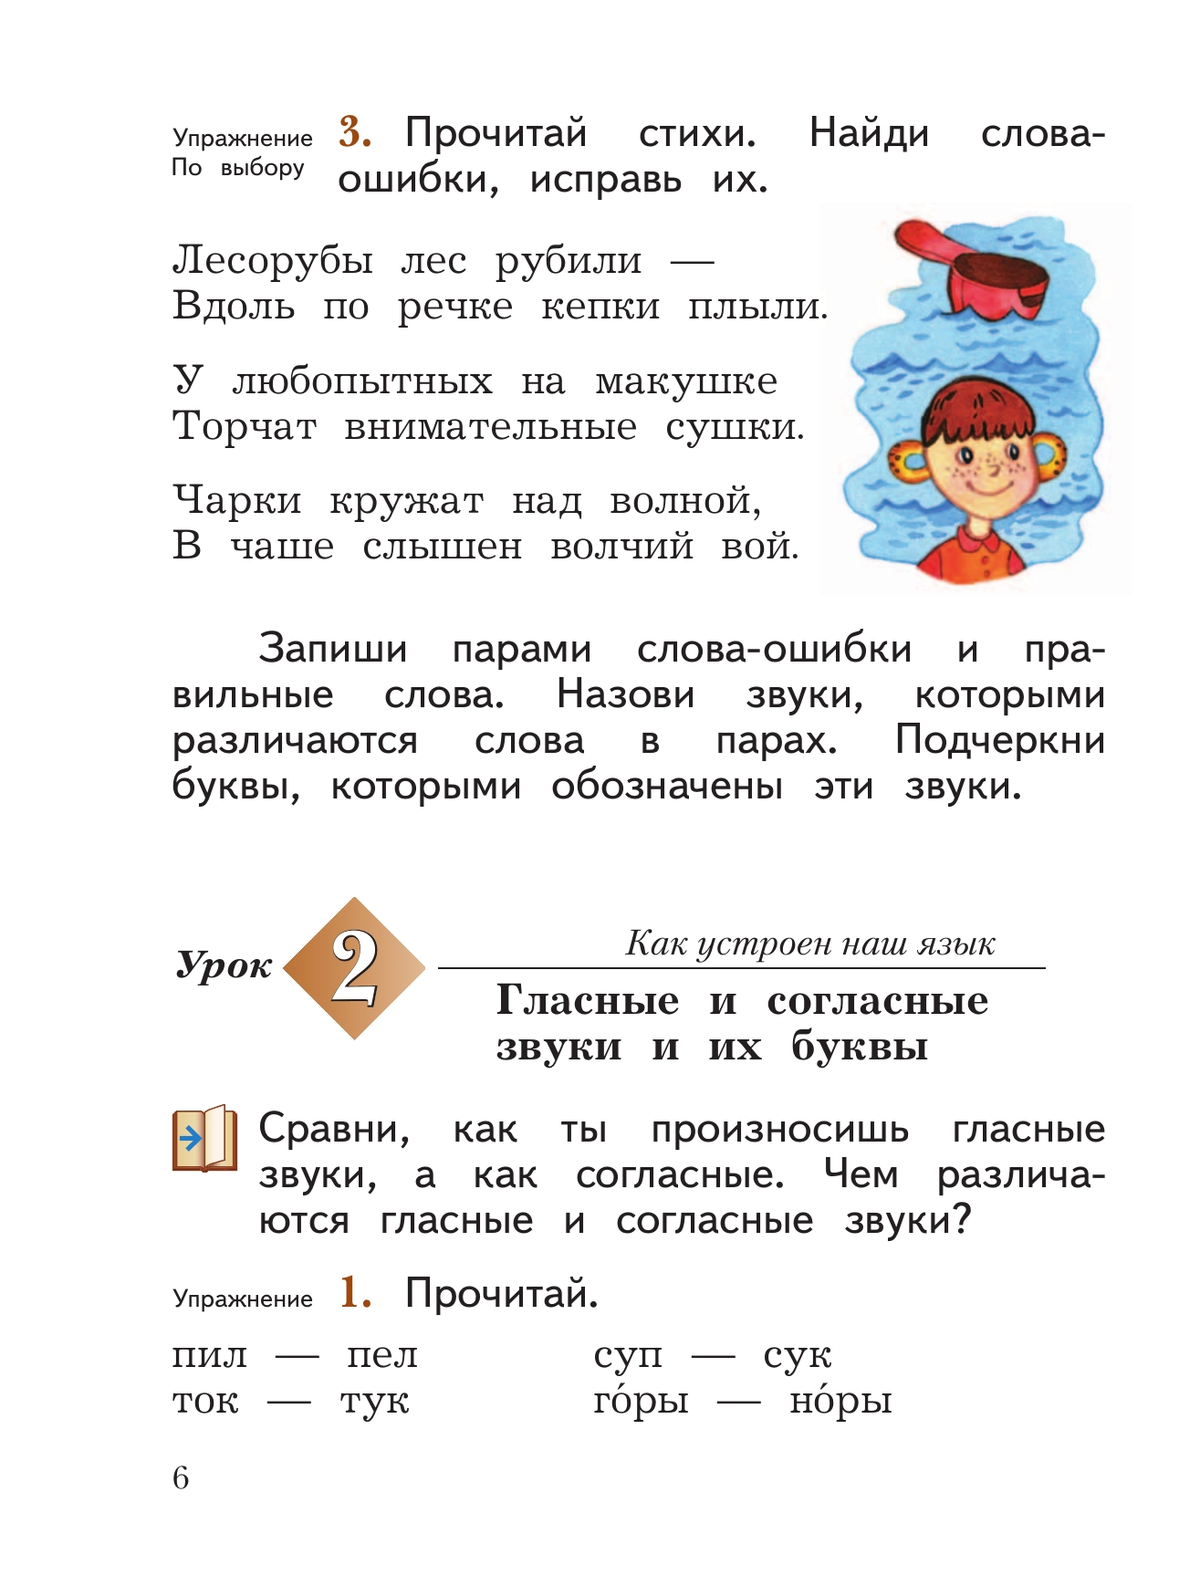 Русский язык. 2 класс. Учебное пособие. В 2 ч. Часть 1 2